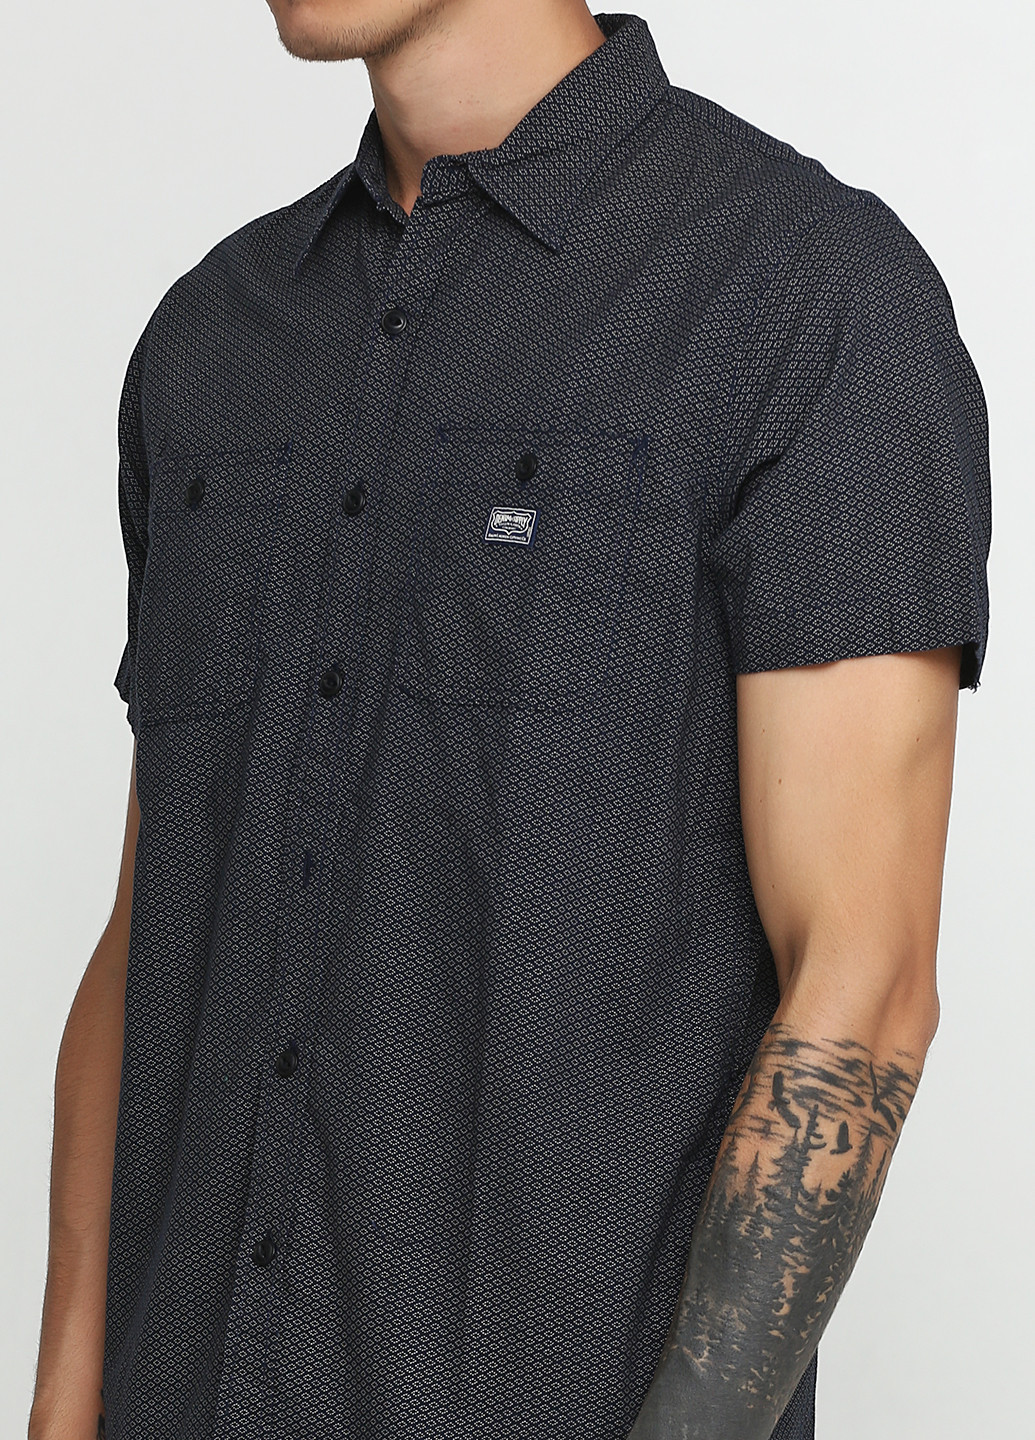 Темно-синяя футболка-тенниска для мужчин Ralph Lauren с геометрическим узором